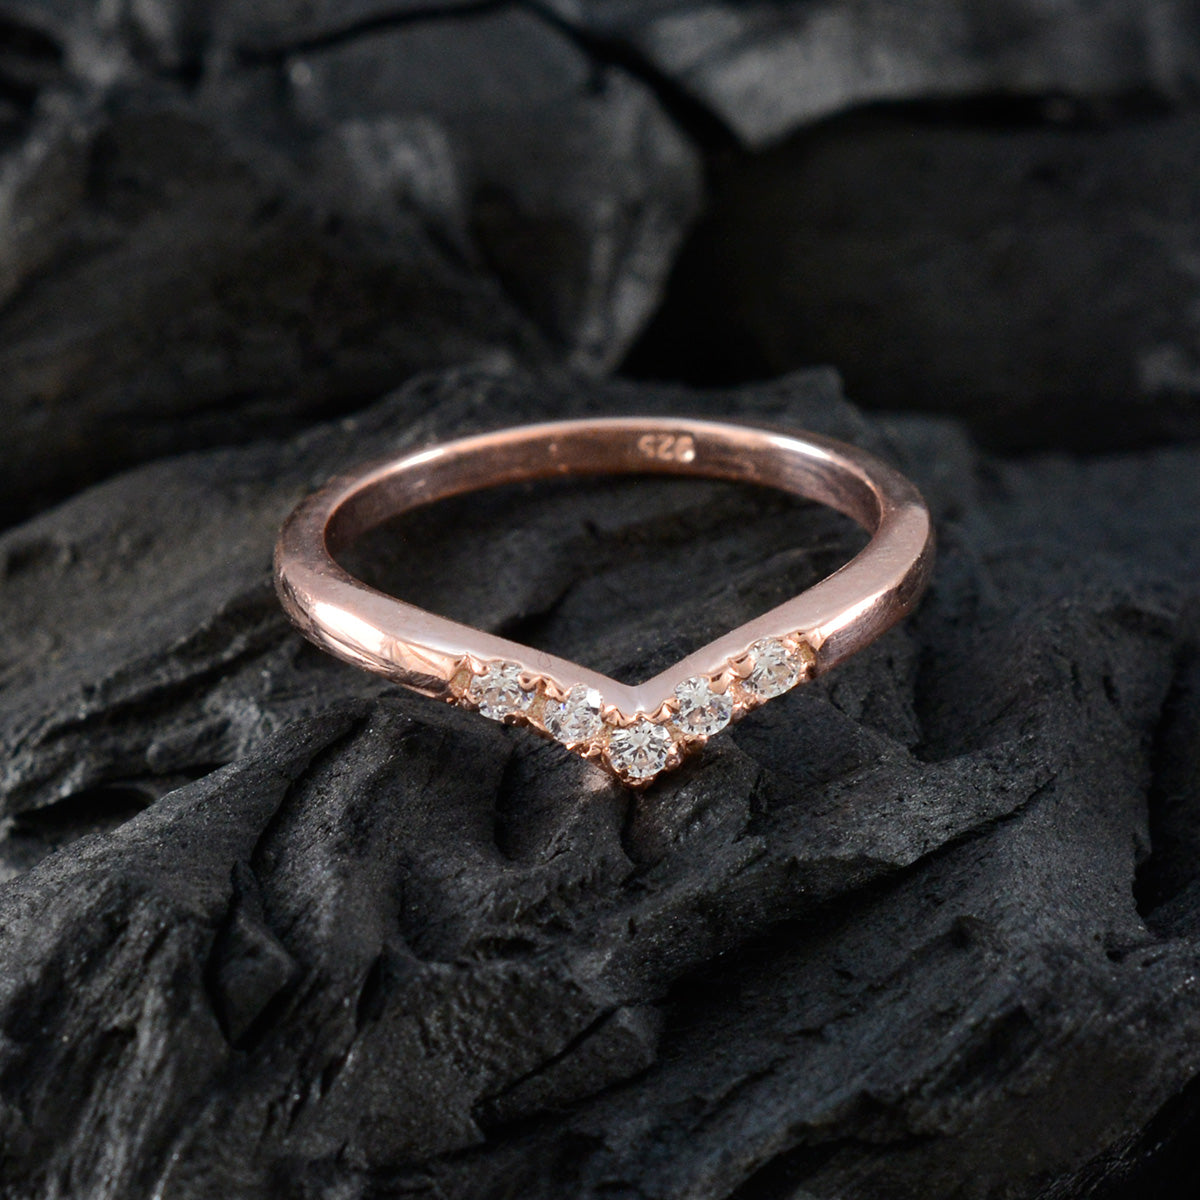 Riyo schattige zilveren ring met roségouden witte CZ-steen ronde vorm Prong-instelling Handamde sieraden nieuwjaarsring